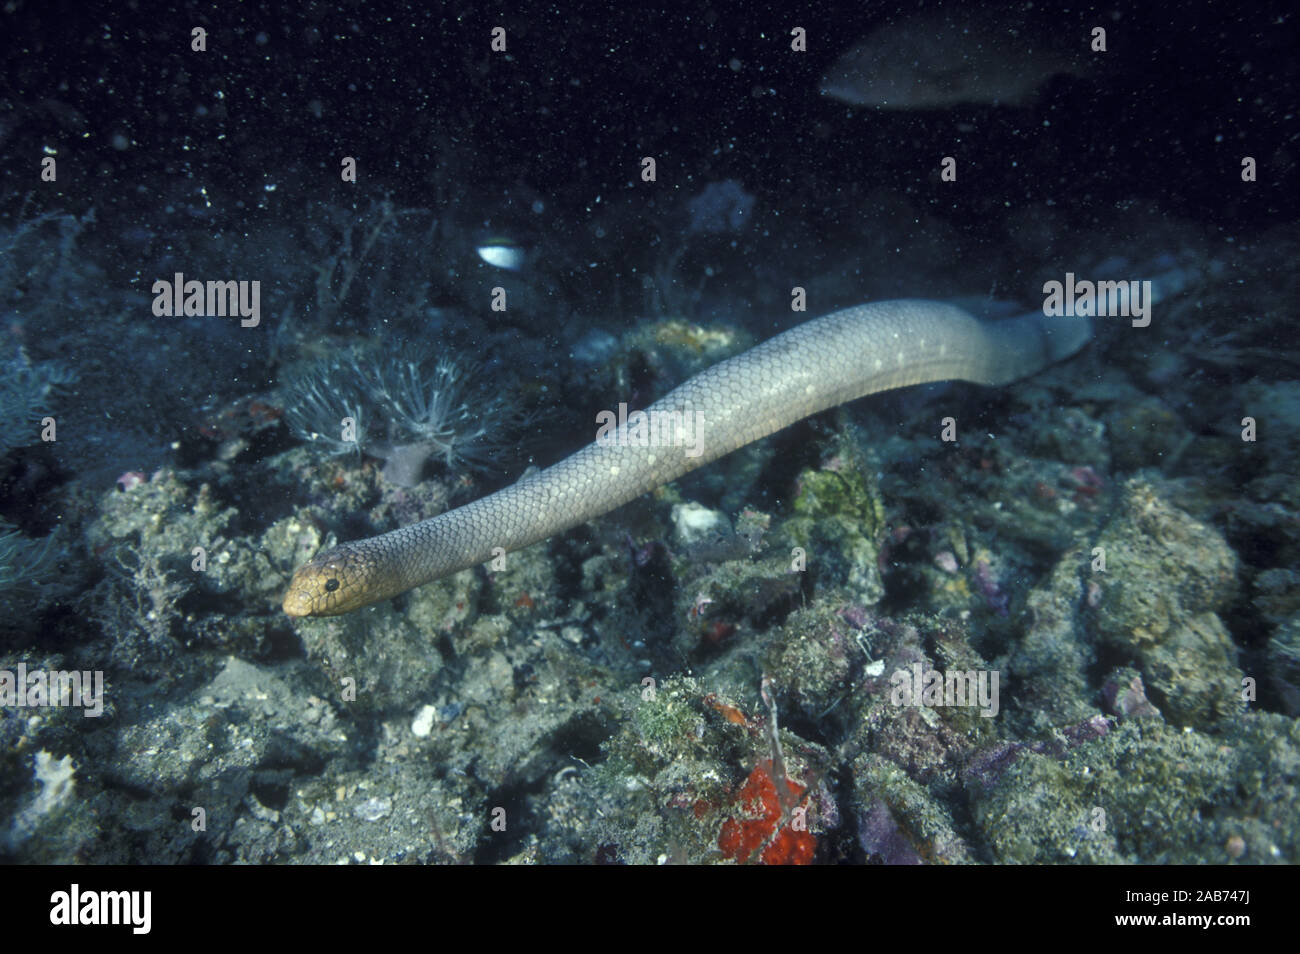 Serpent de mer d'olive (Aipysurus laevis), se nourrit de petits poissons de fond tels que les gobies. En général inoffensives pour les plongeurs. Grande Barrière de Corail, Queenslan Banque D'Images